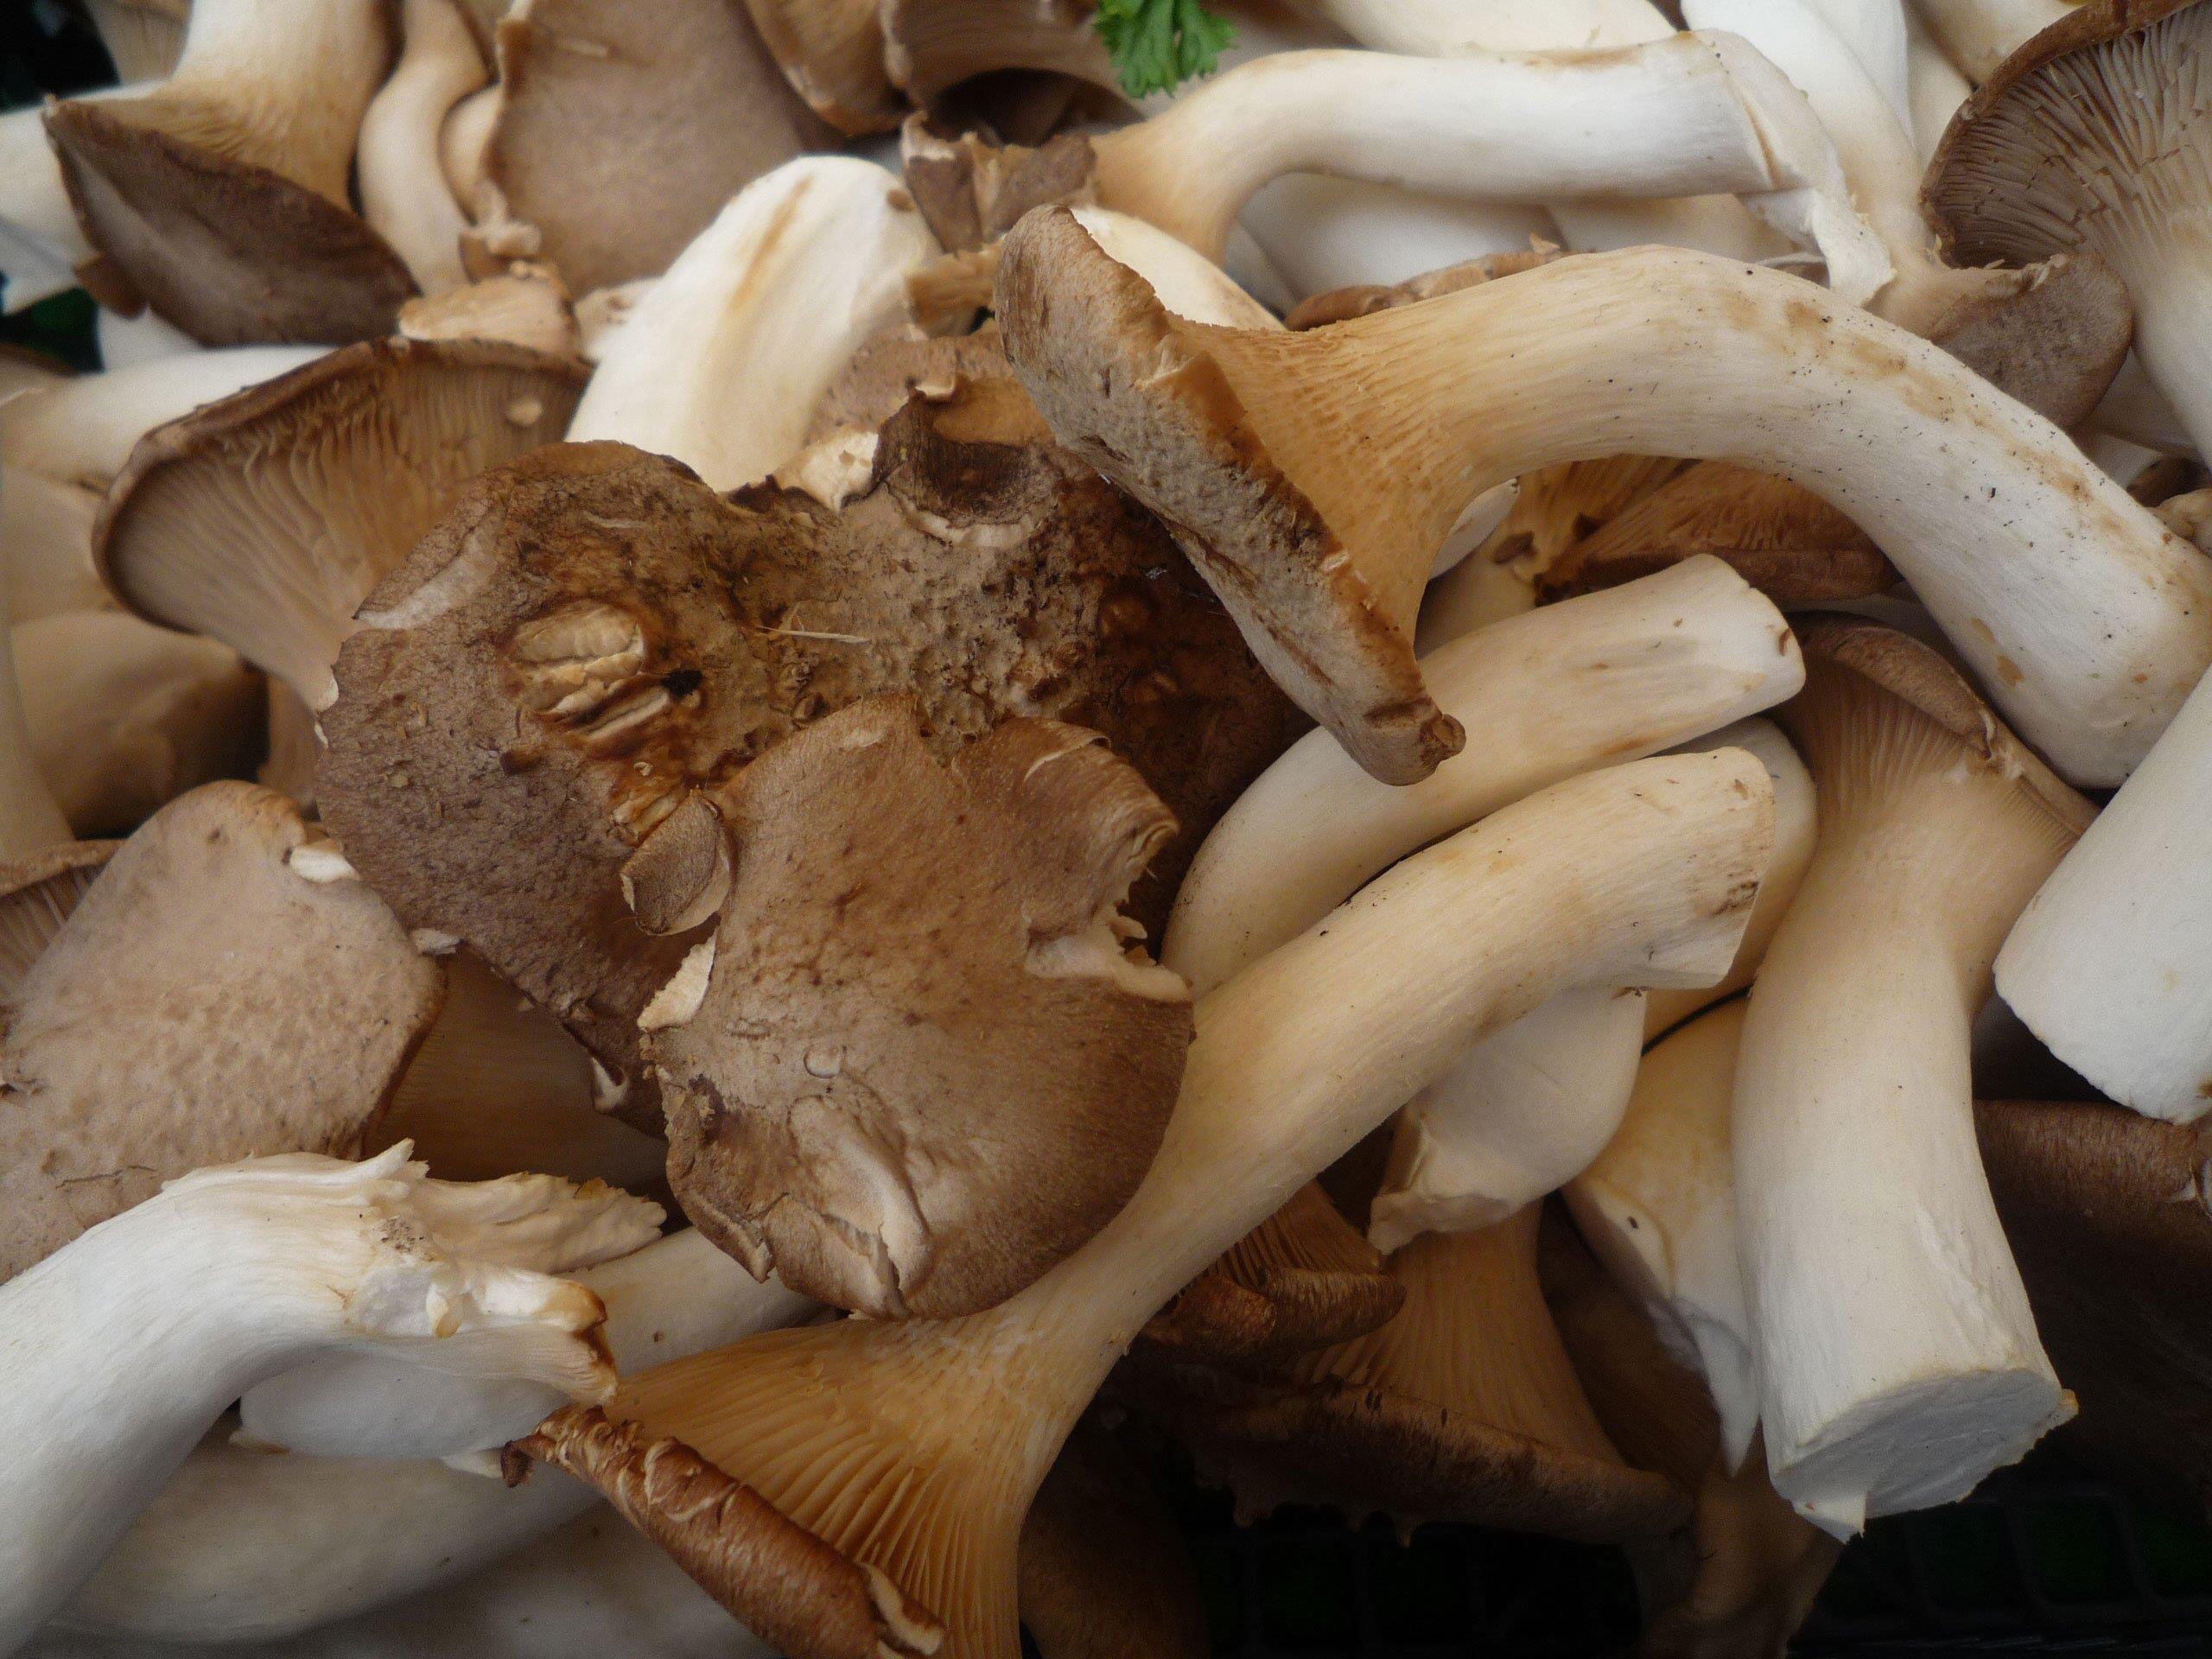 Magic Mushrooms, wie sie bei den Jugendlichen gefunden wurden, sind ganz und gar nicht so harmlos wie gewöhnliche Pilze